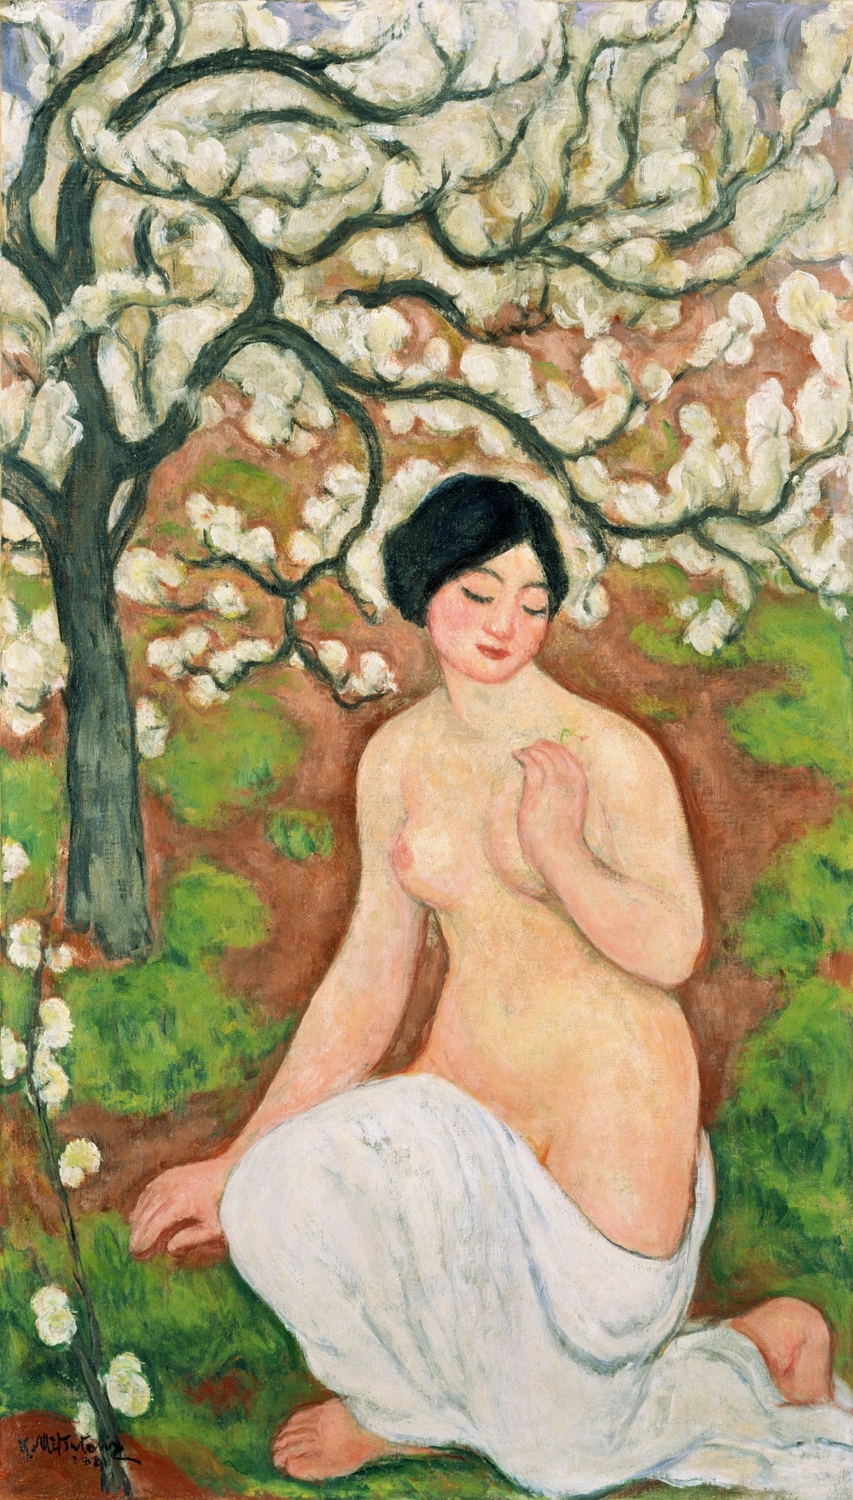 樹下裸婦 | コレクション | ポーラ美術館